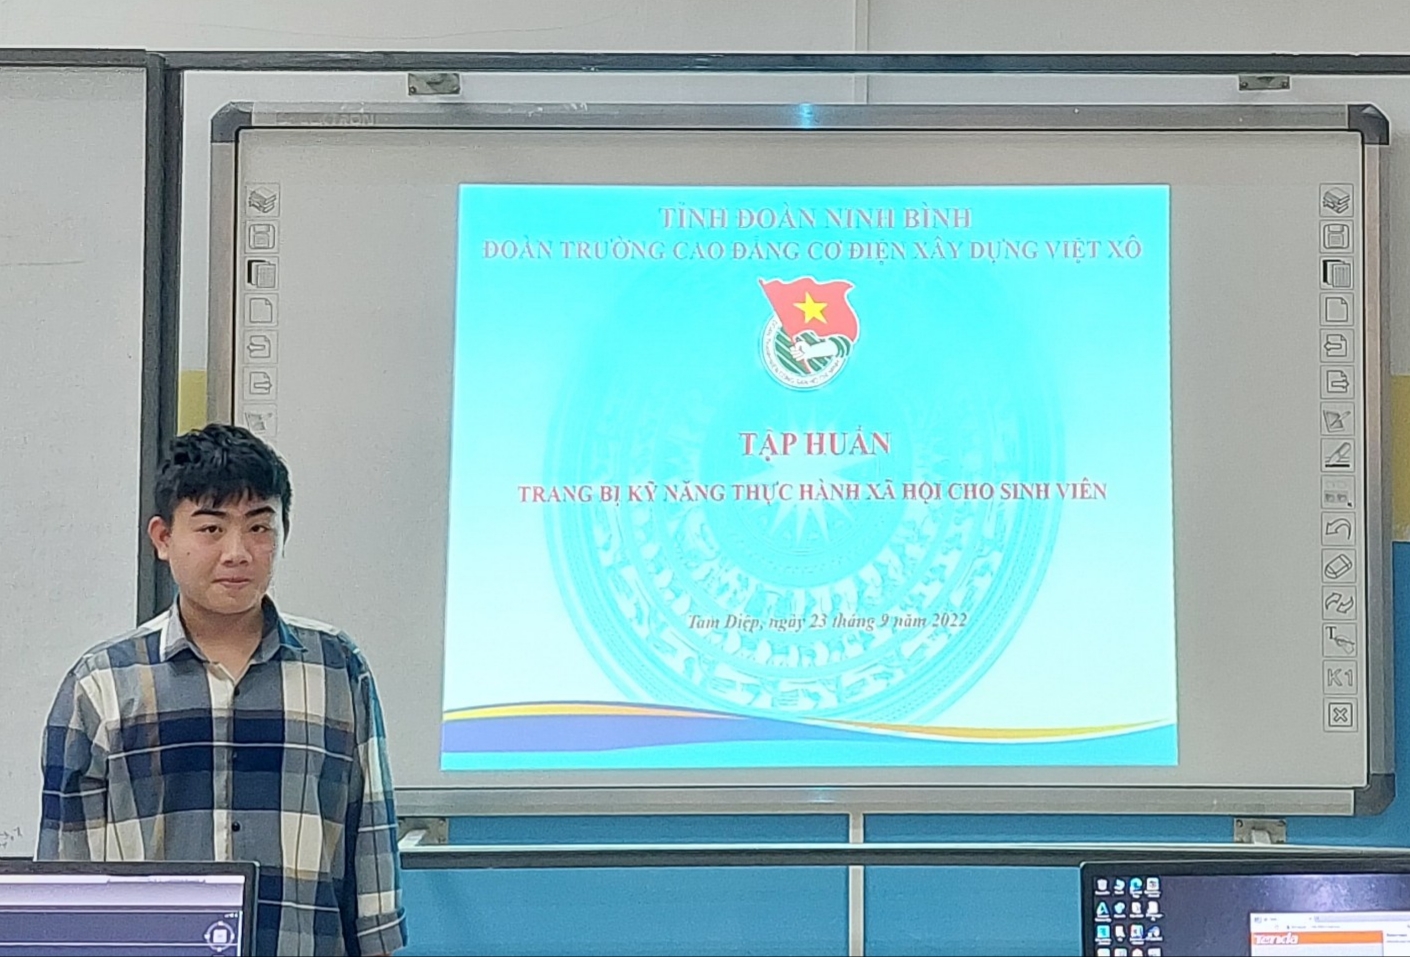 Tập huấn “Trang bị kỹ năng thực hành xã hội cho đoàn viên, sinh viên” năm học 2022 – 2023.